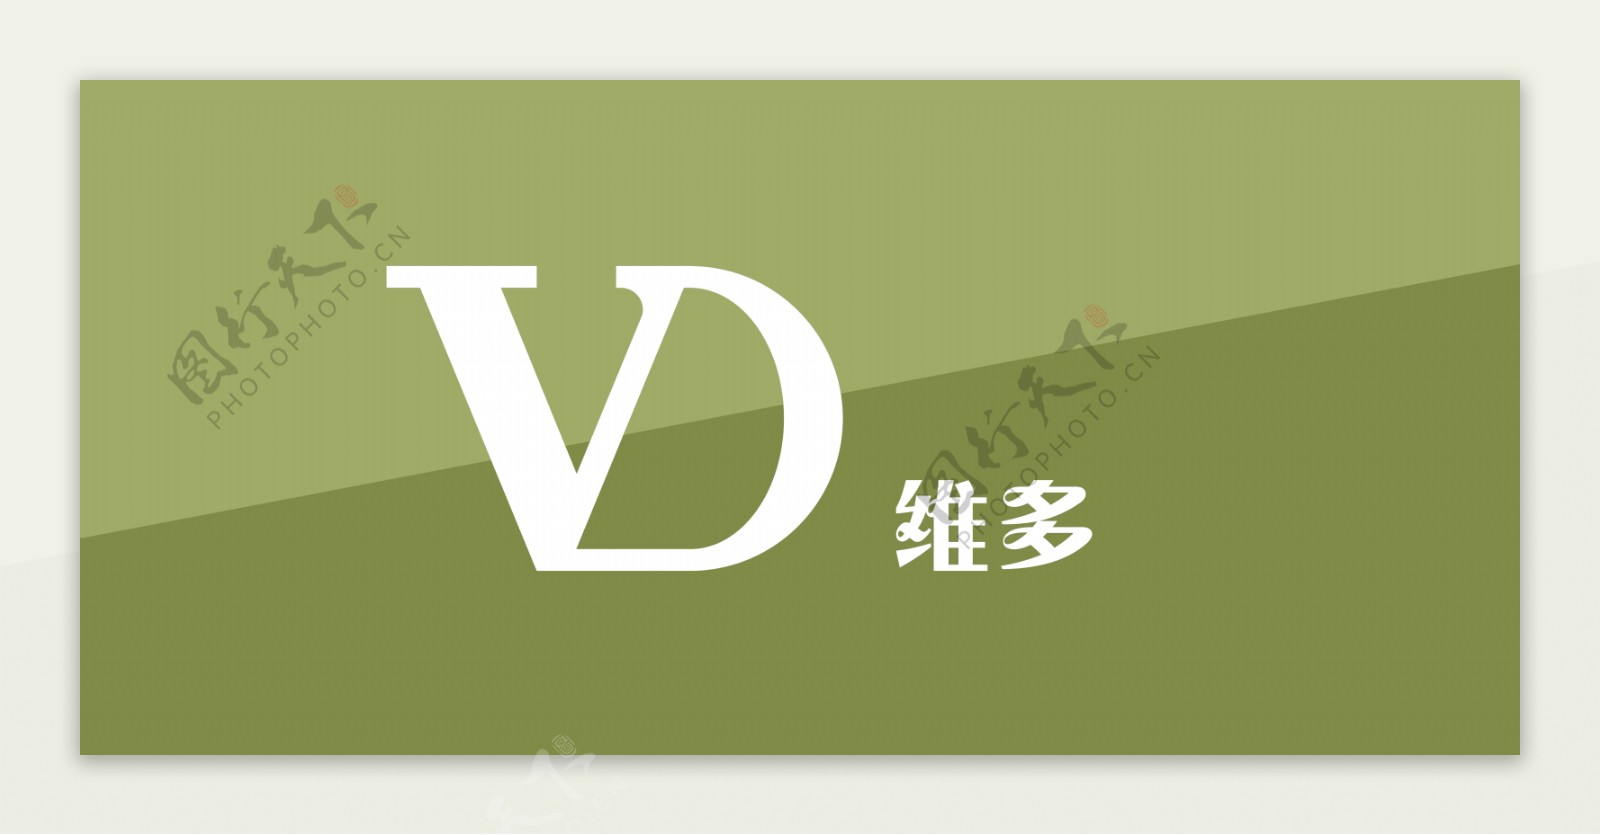 VD维多门头logo